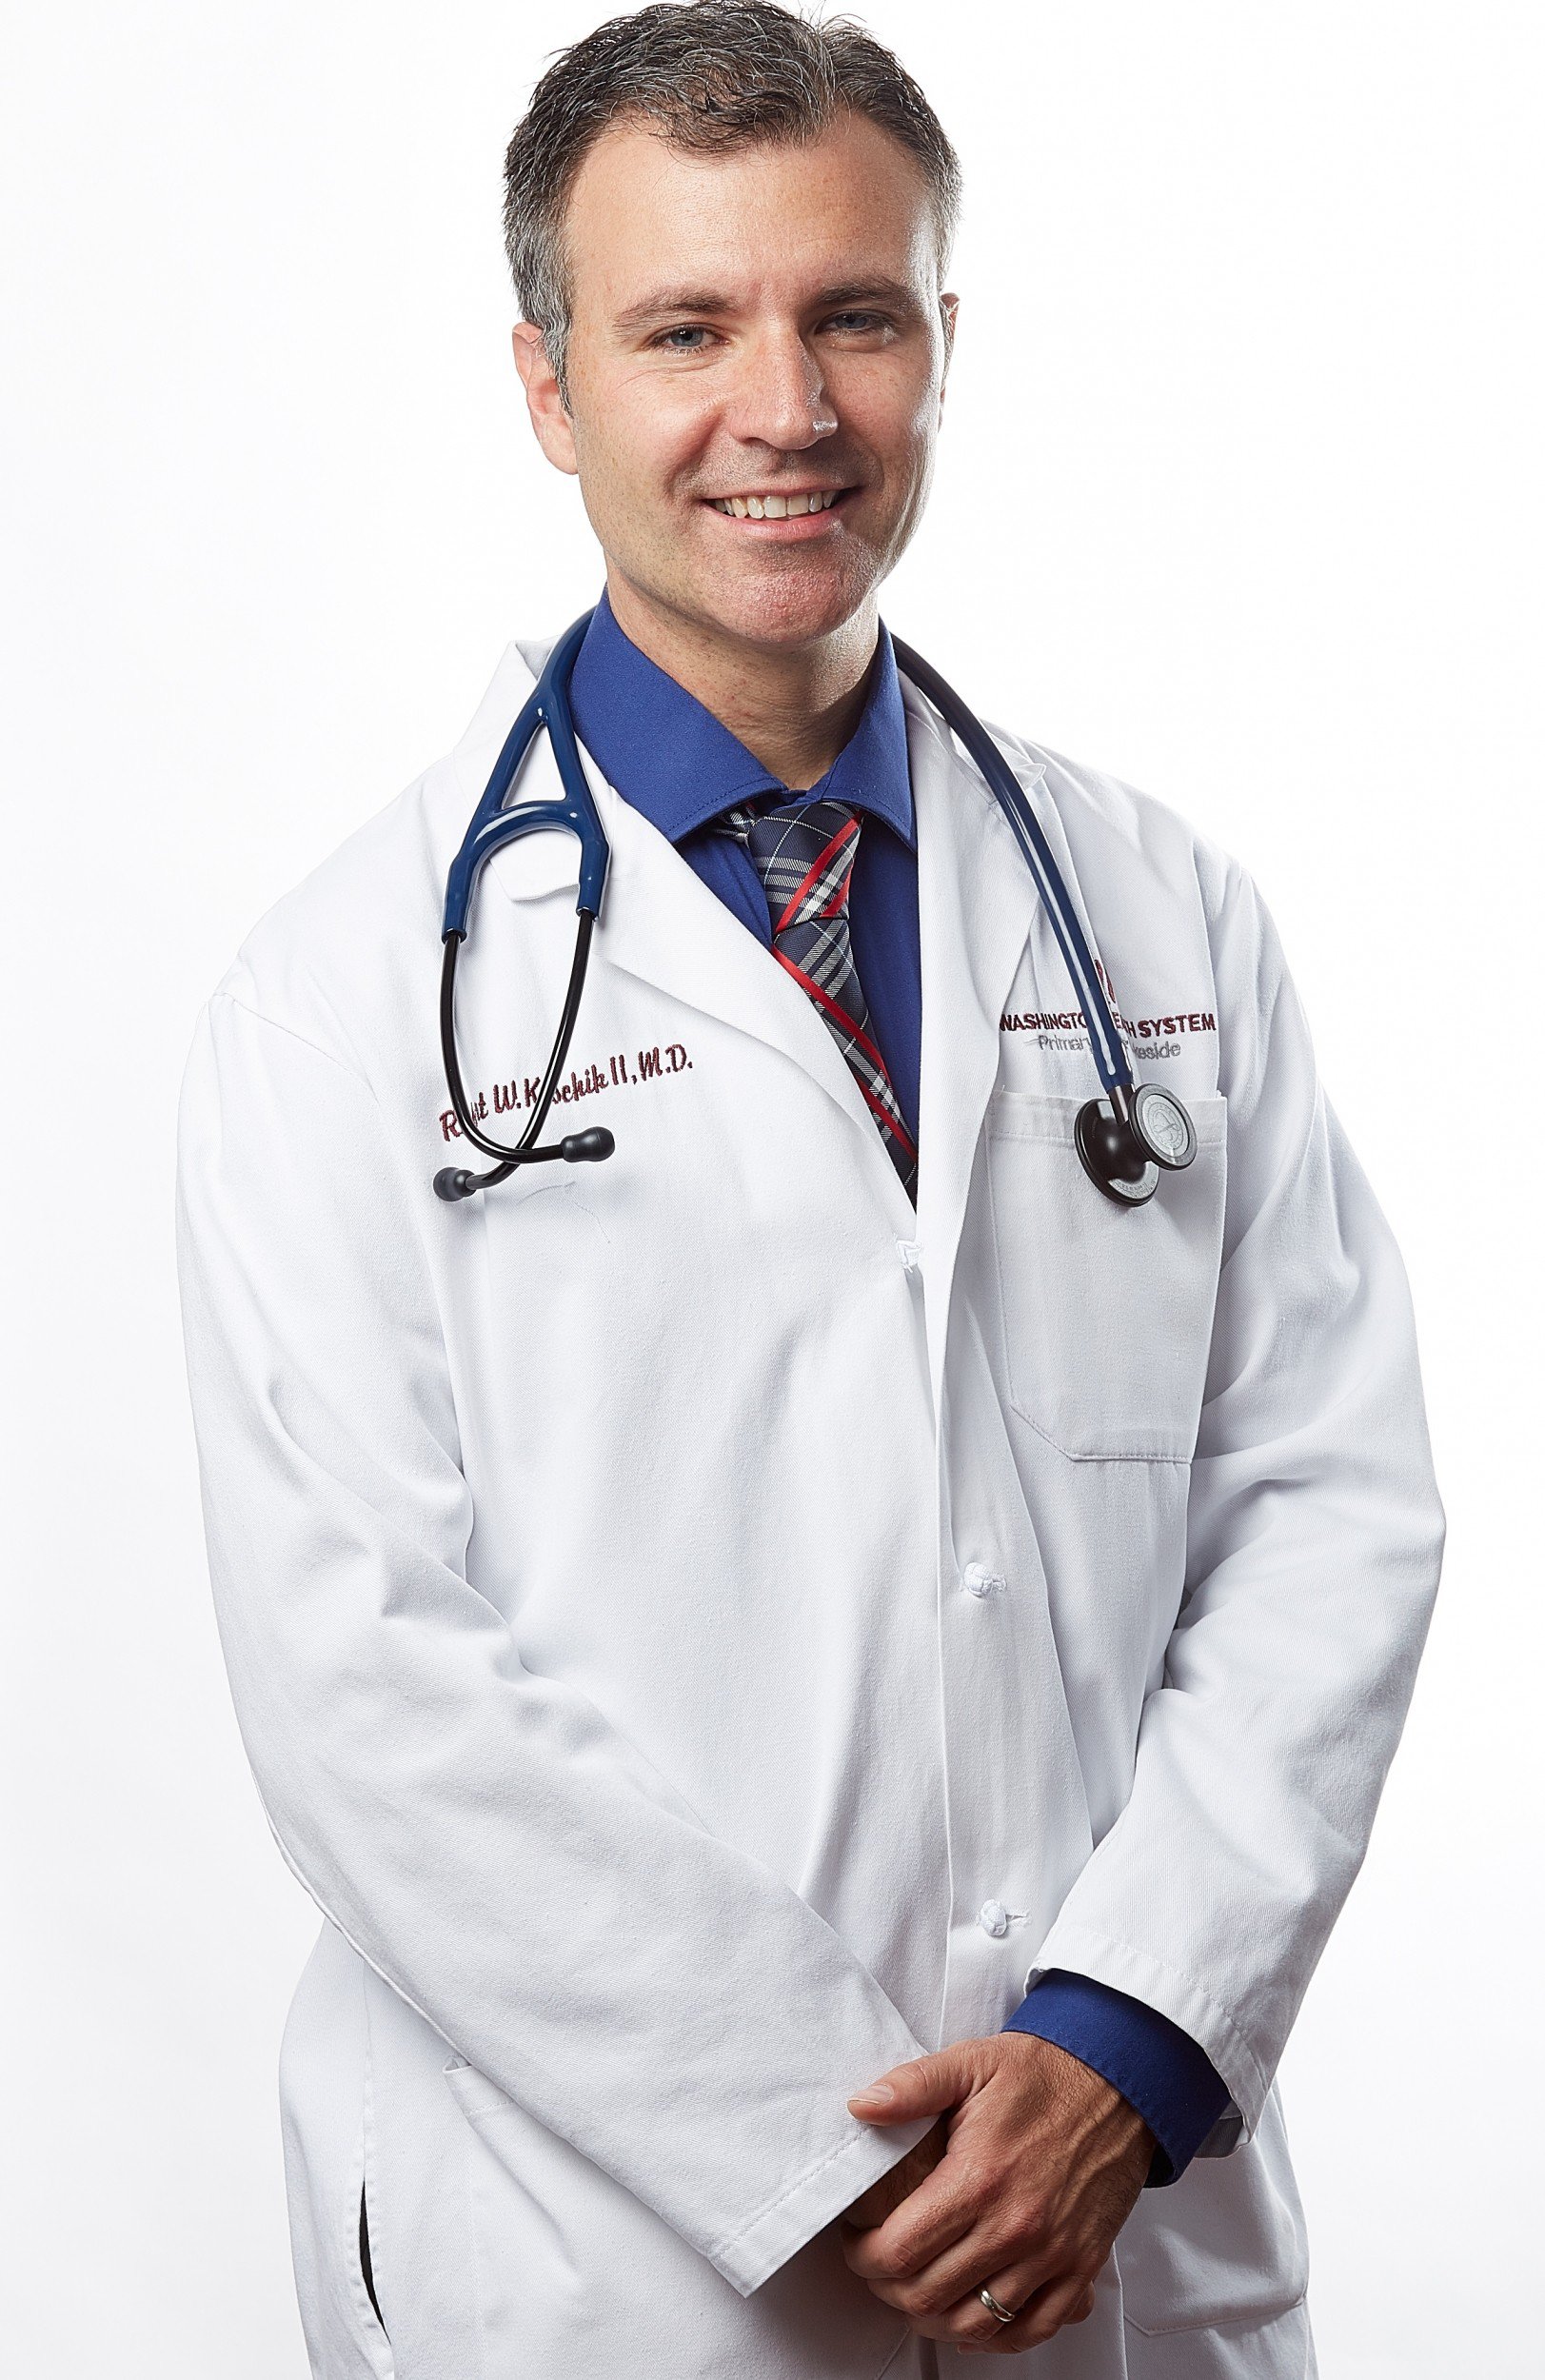 Dr. Robert Koschik